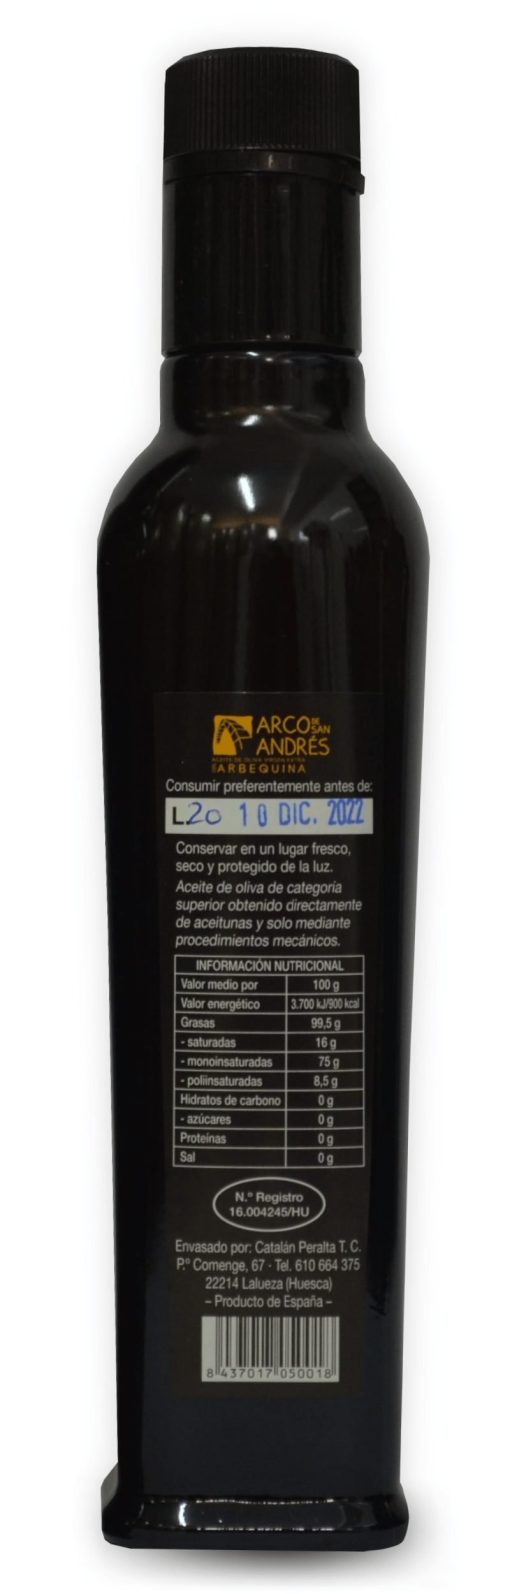 ArcoDeSanAndres AOVE Arbequino Albahaca Botella 250ml LU 002 1671630846